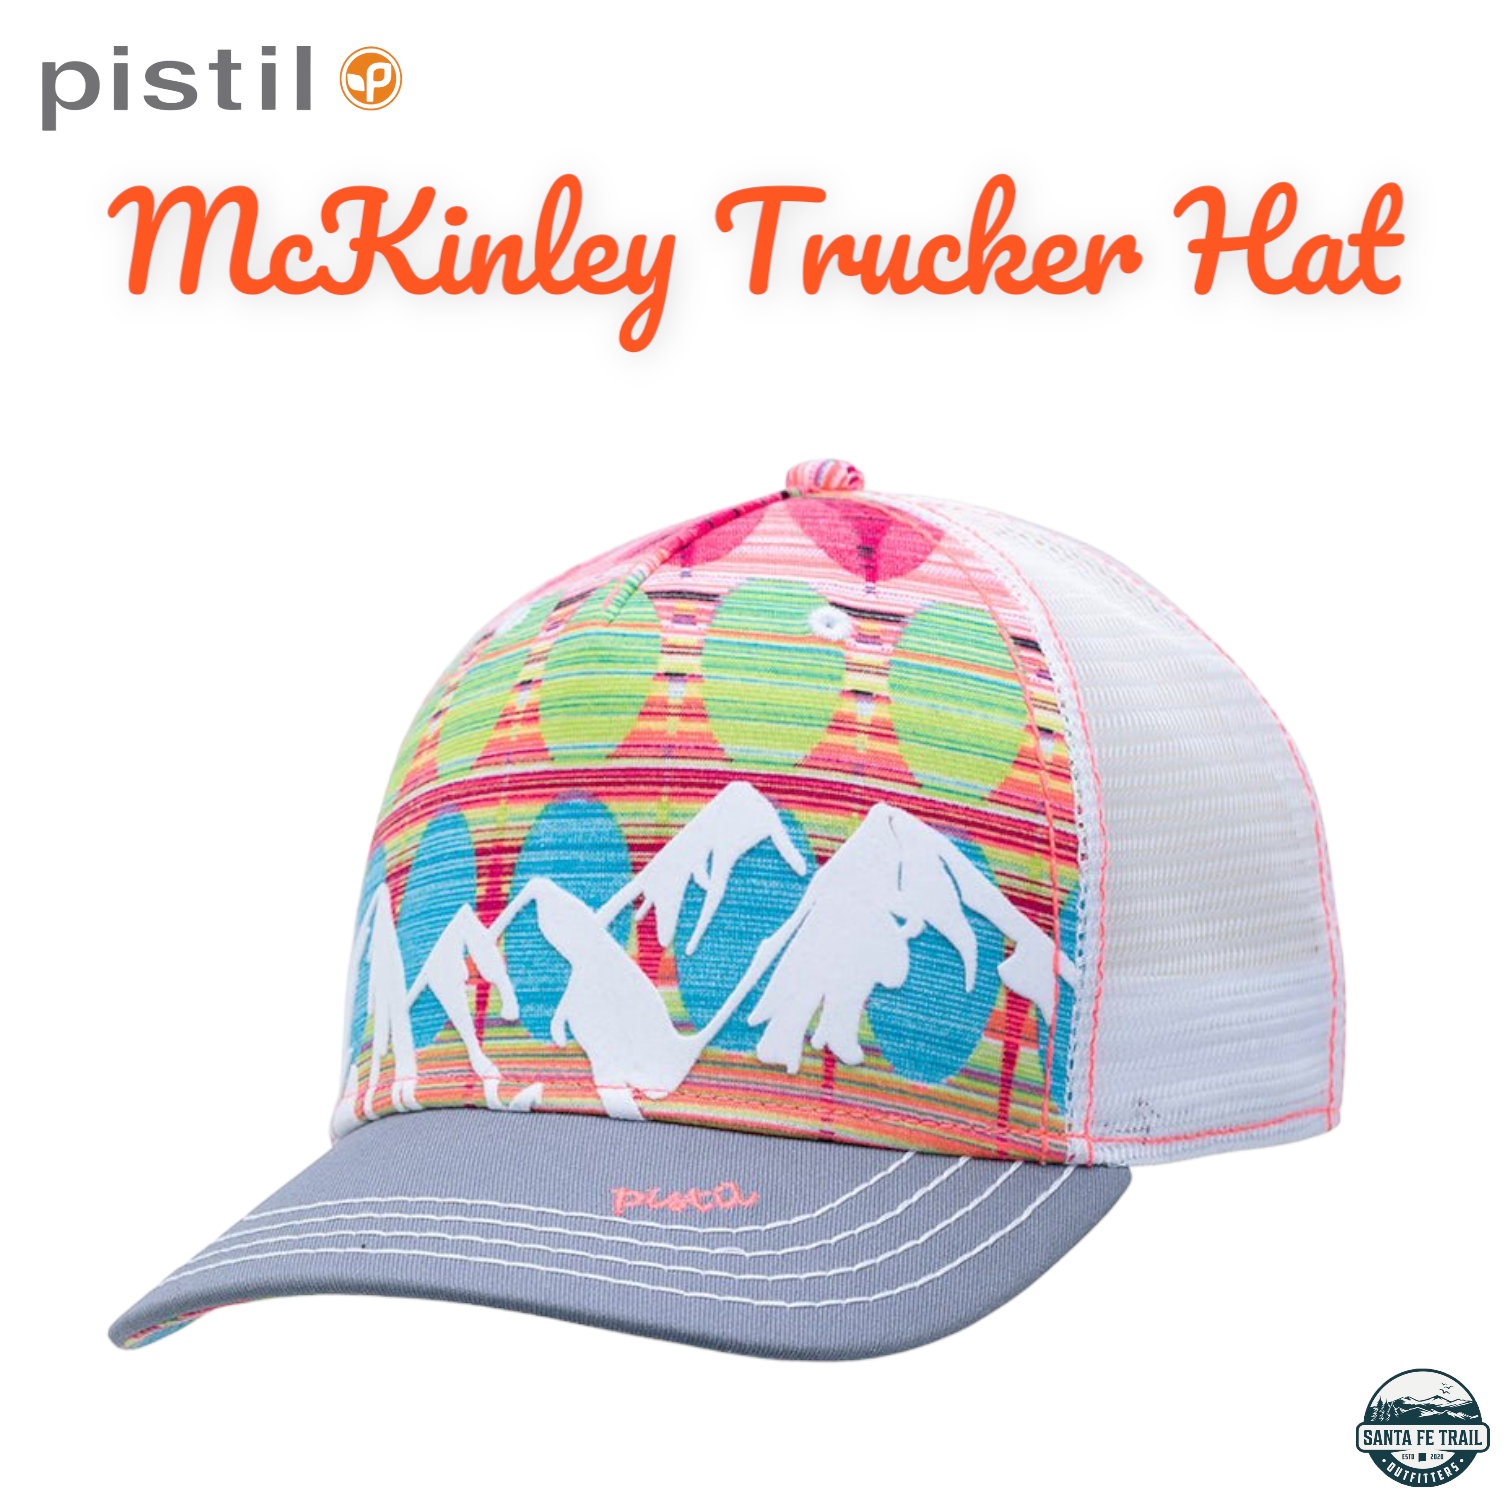 McKinley Trucker Hat by Pistil Designs